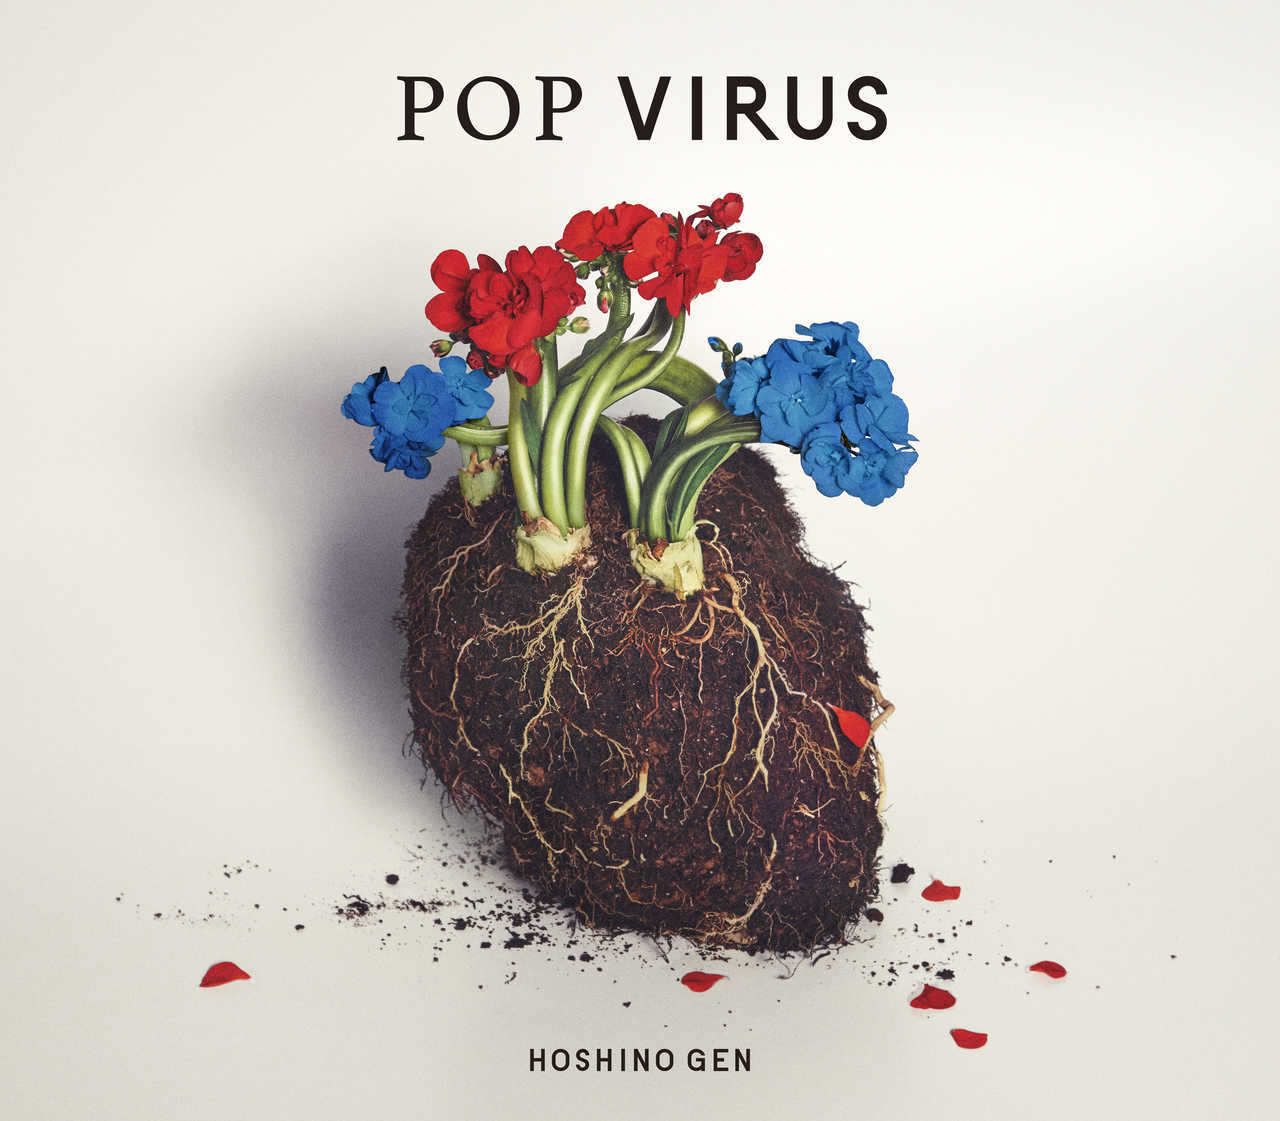 星野源 (ほしのげん) 5thアルバム『POP VIRUS (ポップ・ウイルス)』(2018年12月19日発売) 高画質CDジャケット画像